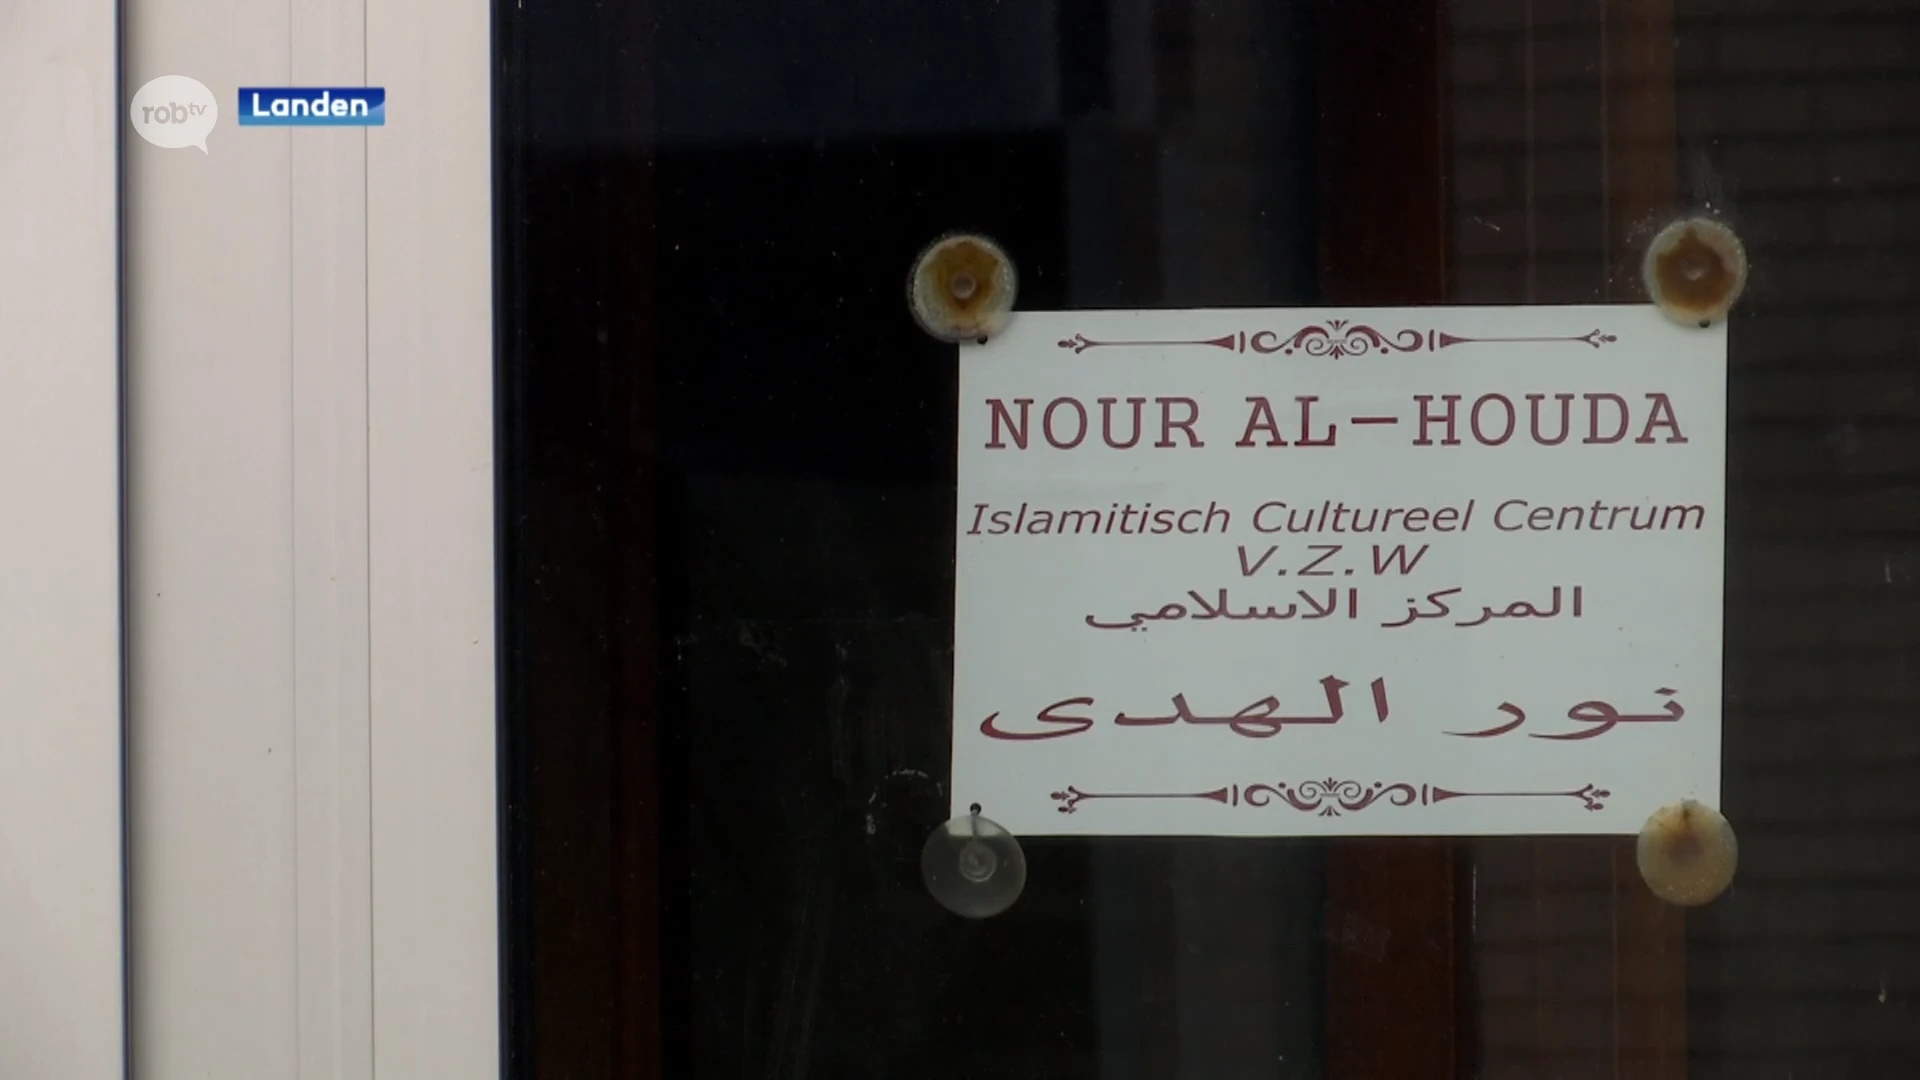 Landen geeft negatief advies over erkenning Nour Alhouda gemeenschap: "Er ontbreekt transparantie"